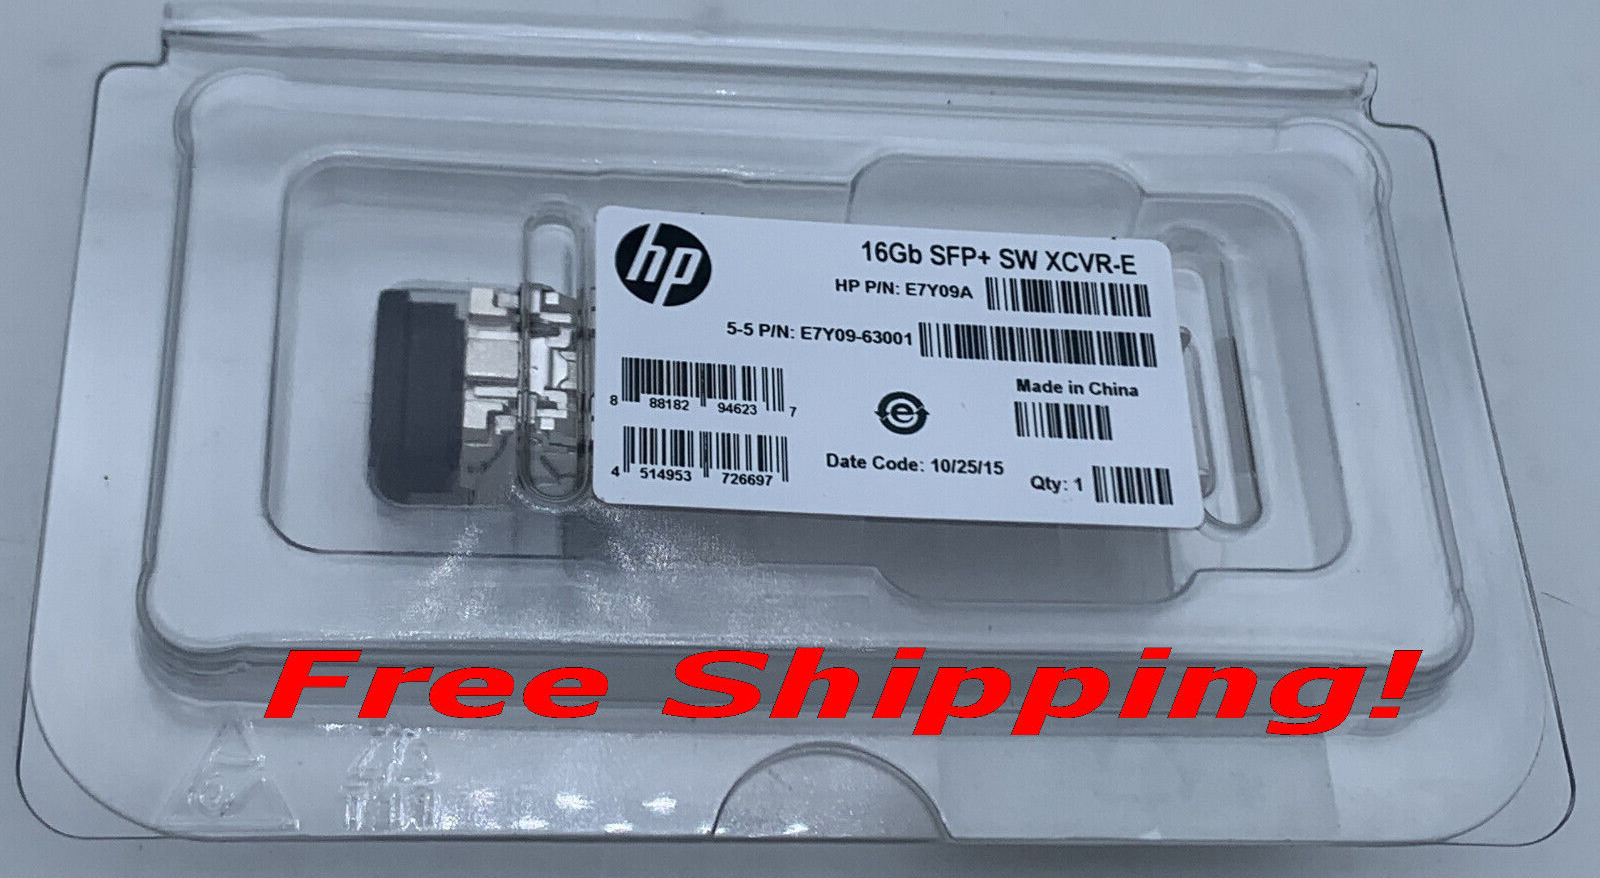 HP Genuine HPE OEM 16Gb SFP+ SW XCVR-E TRANSCEIVER  E7Y09A BRAND NEW 